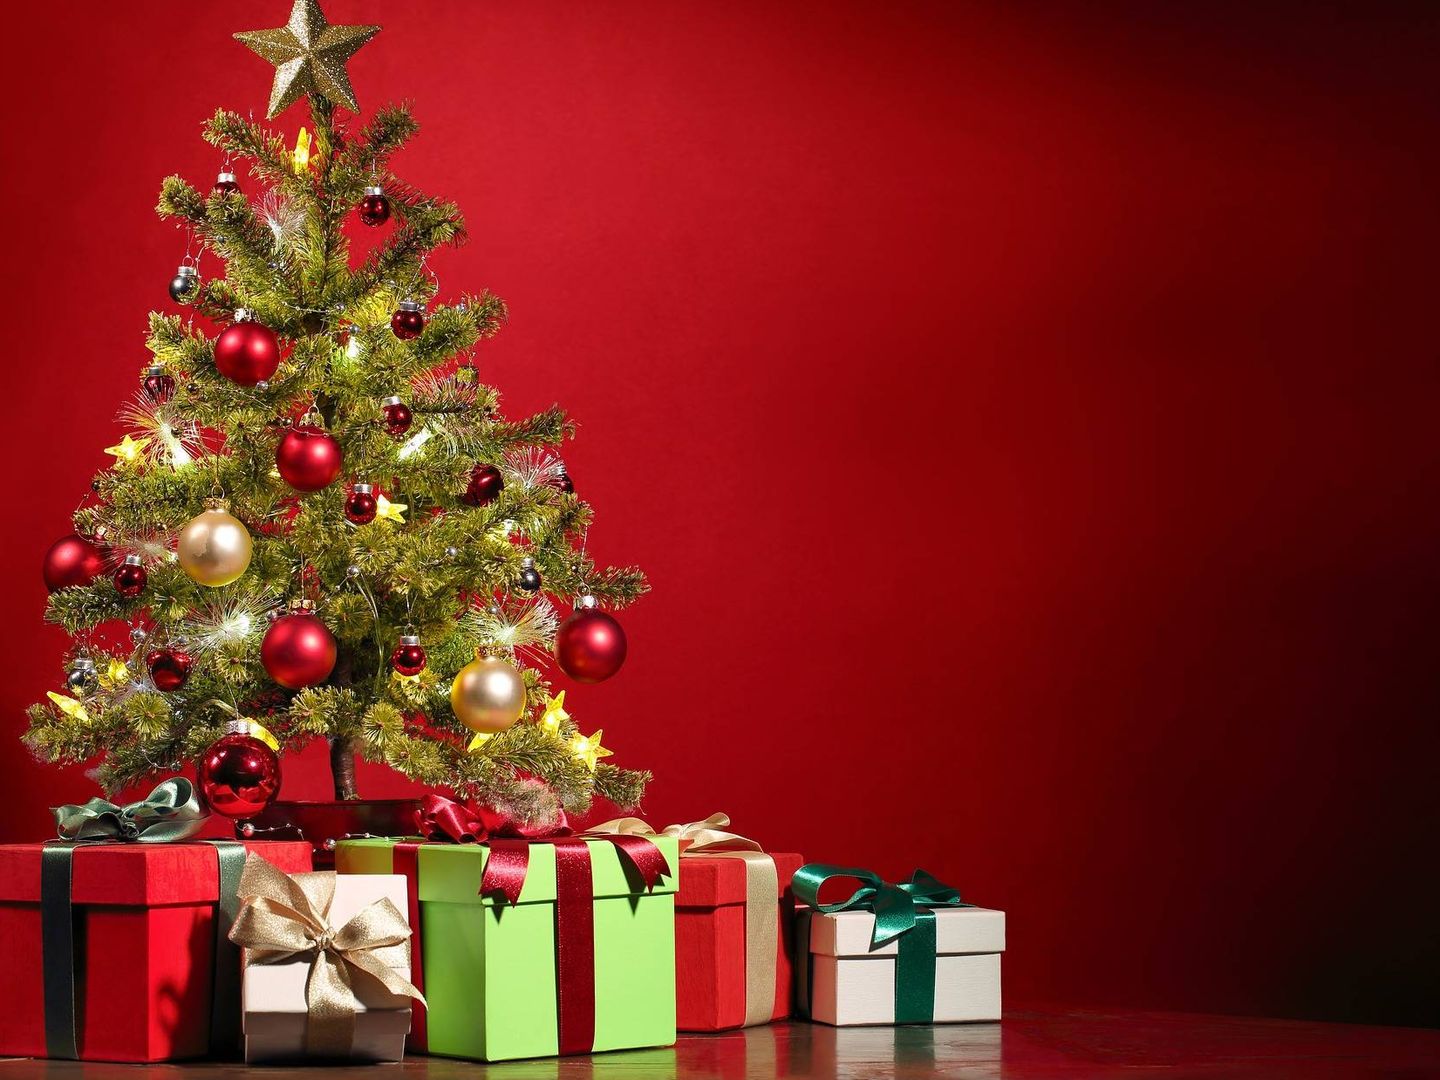 Si no tienes espíritu navideño, la psicóloga te anima a empezar con “una  nueva tradición”